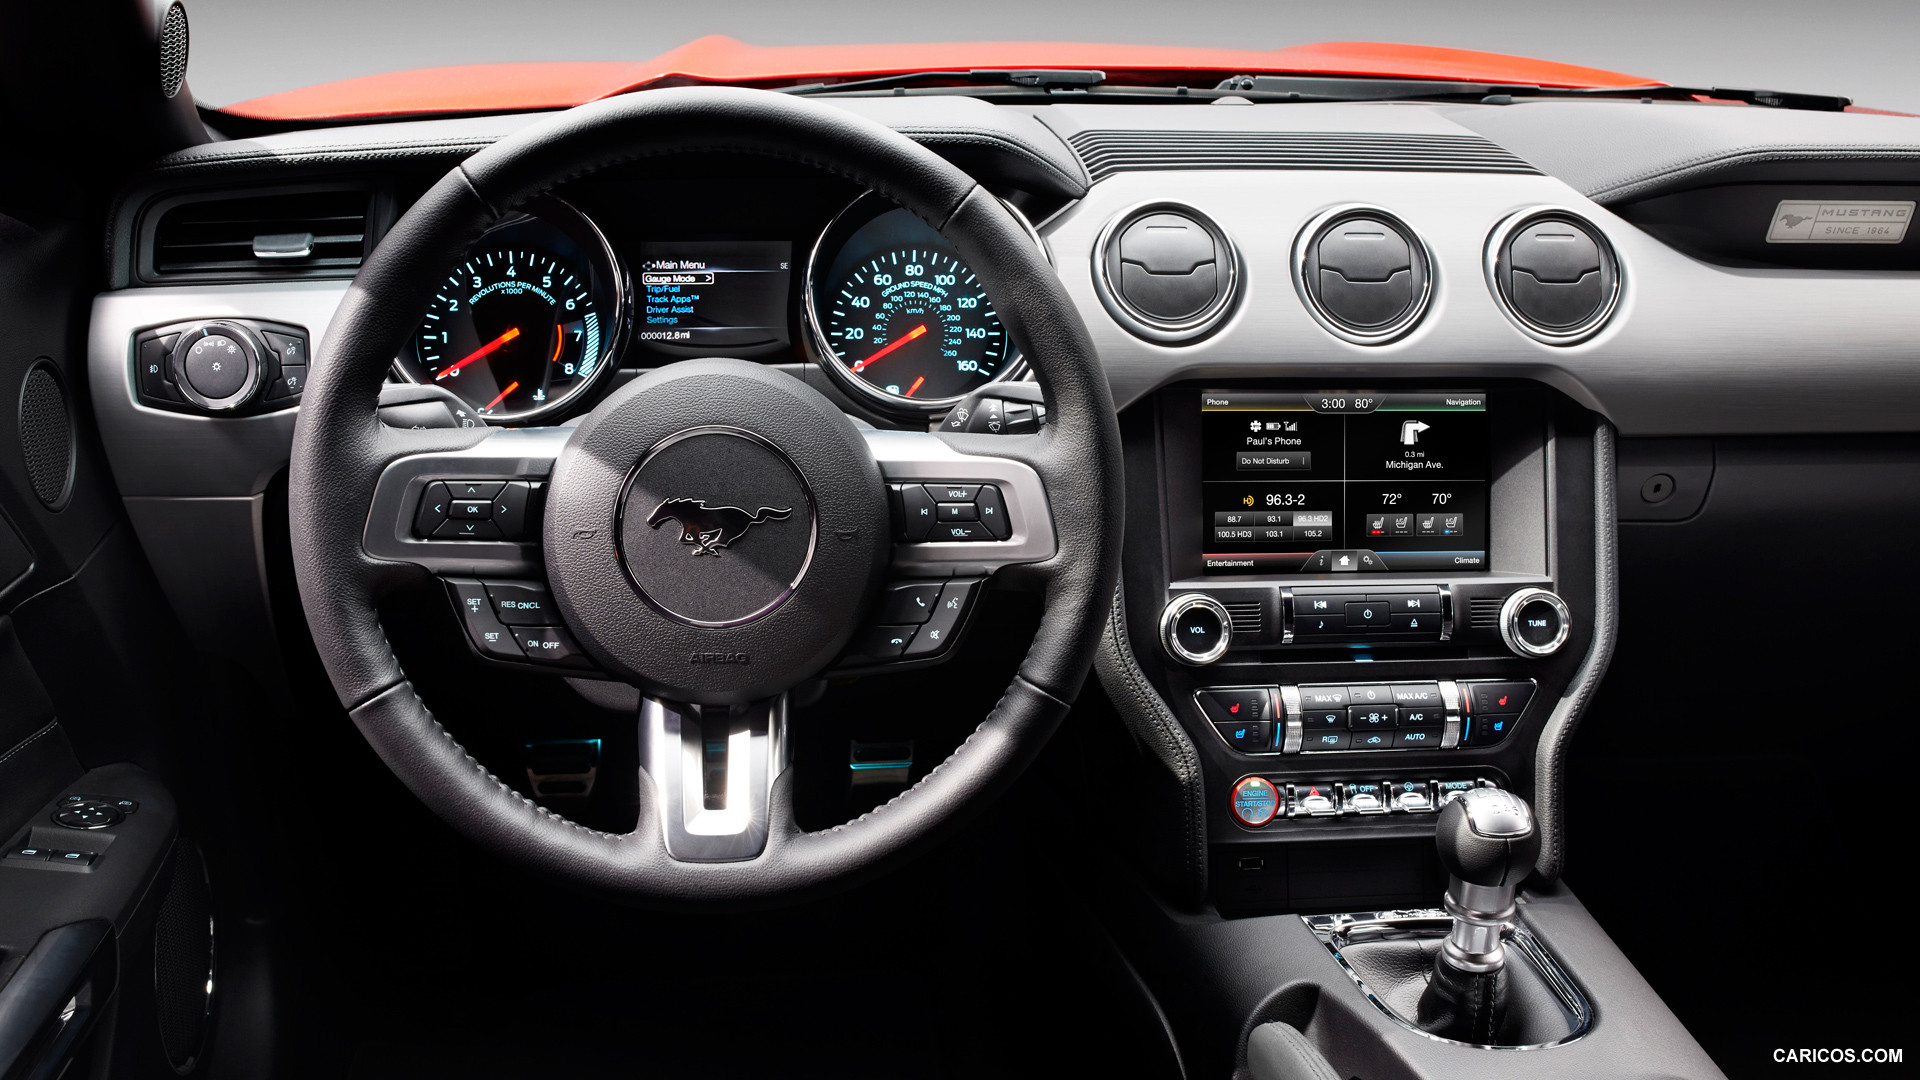 Ford Fiesta Hatchback 2013 Interior